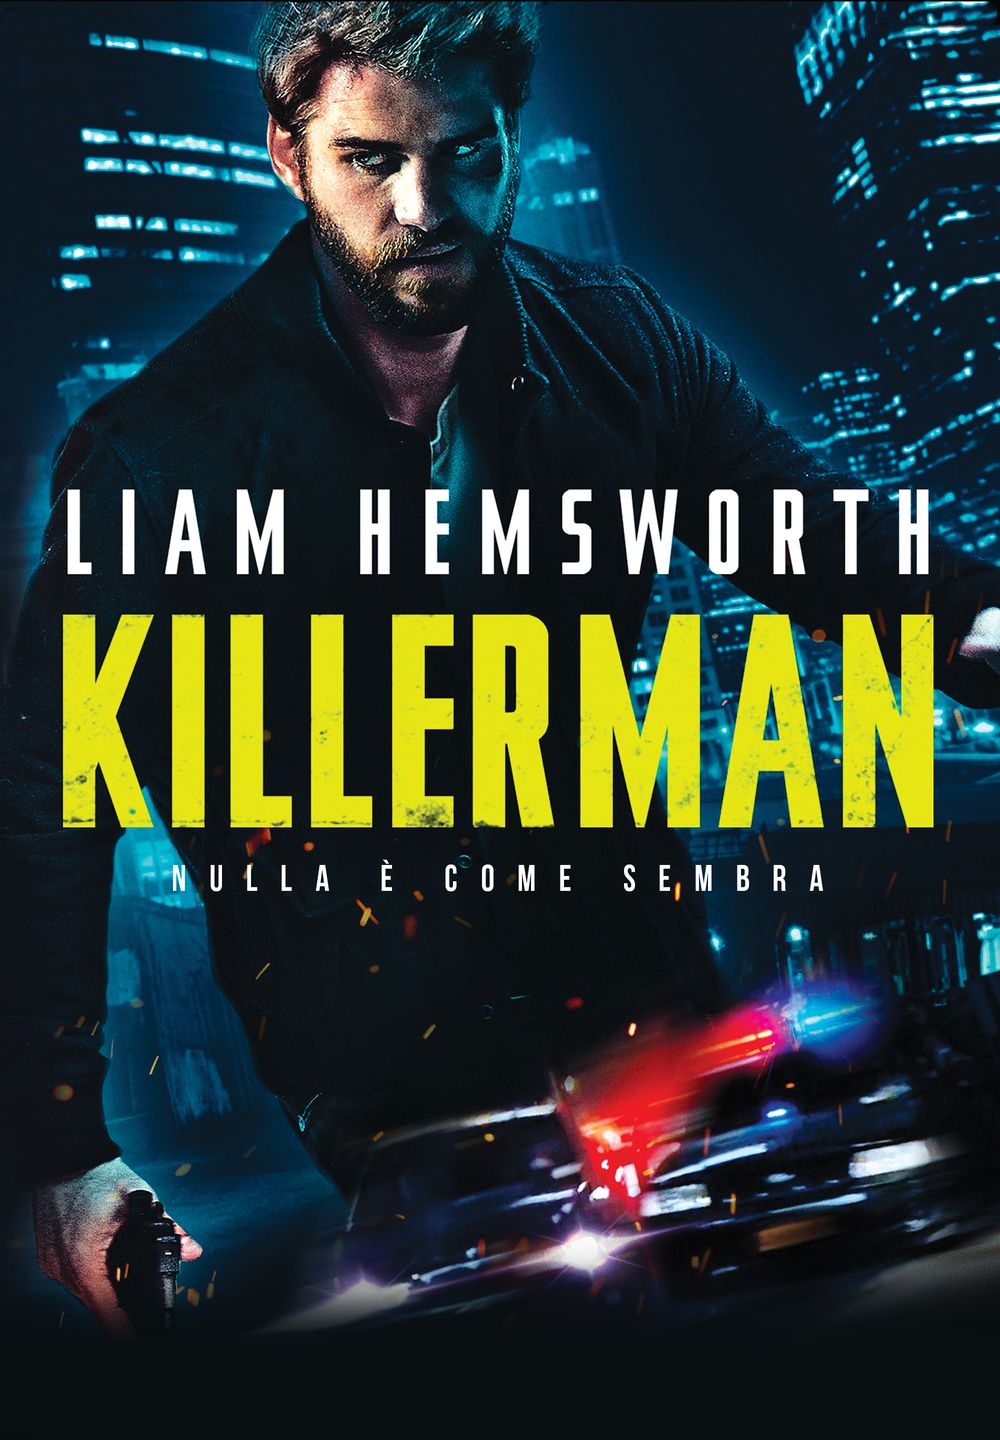 Killerman [HD] (2019)